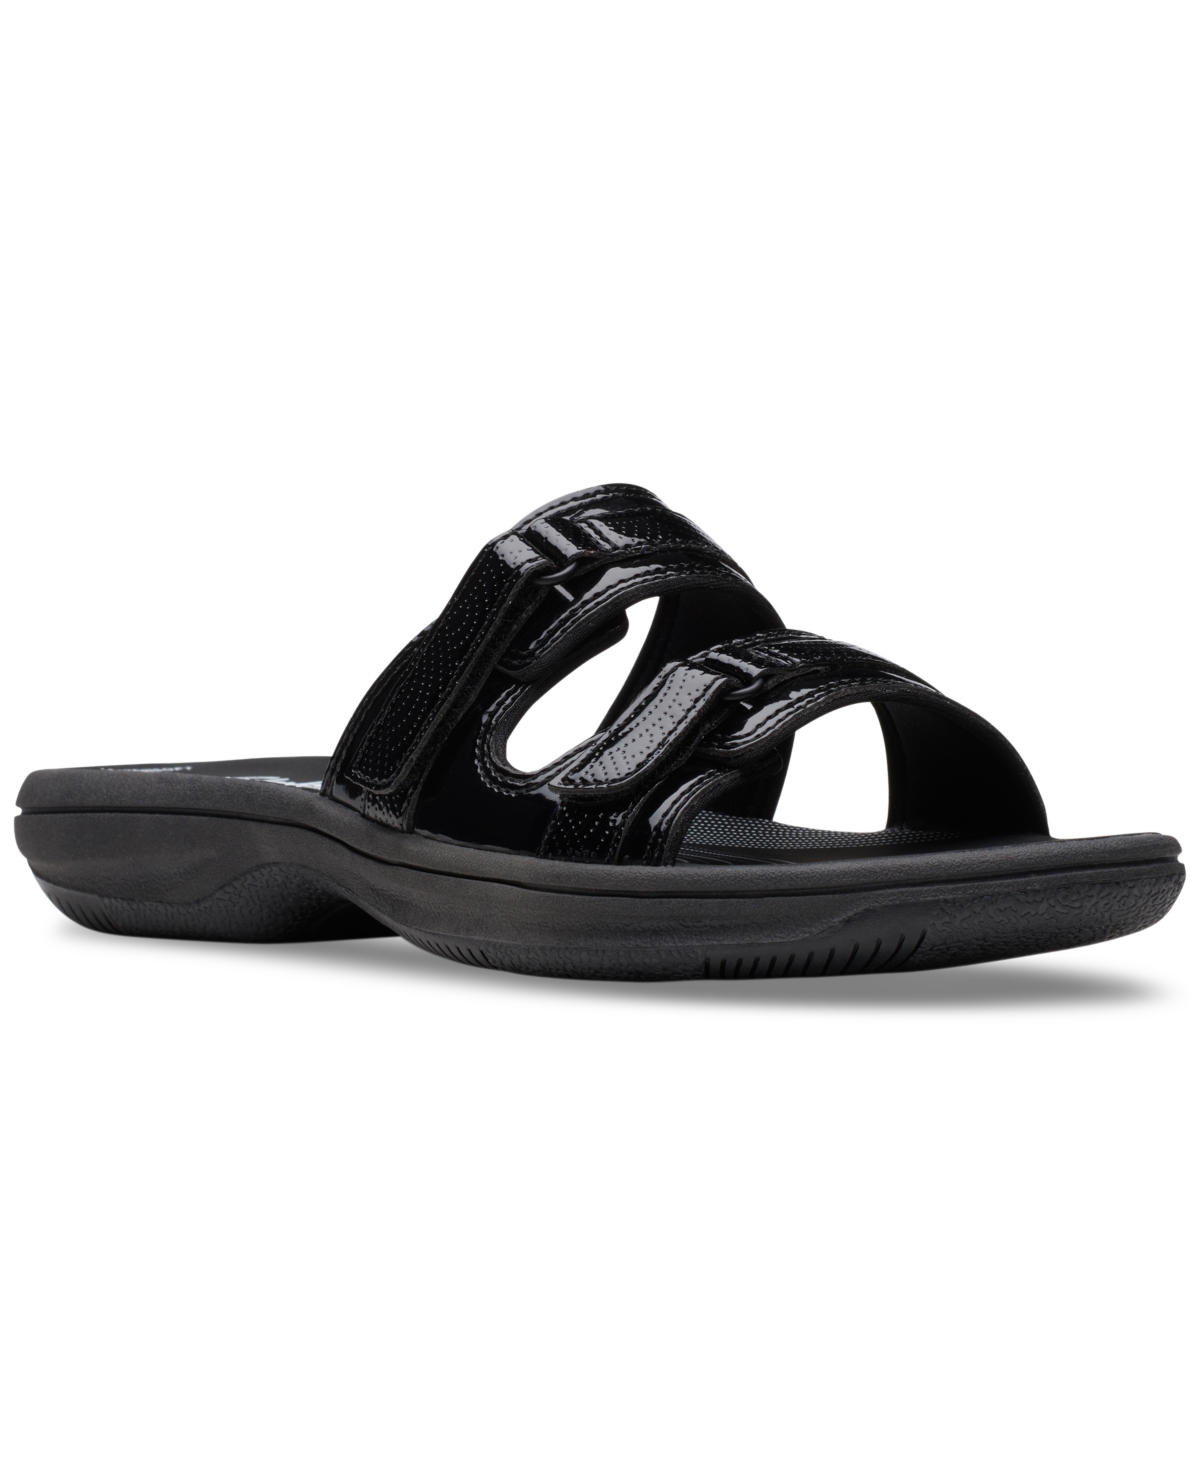 Clarks Women's Cloudsteppers Breeze Piper Comfort Slide Sandals In Black Patent